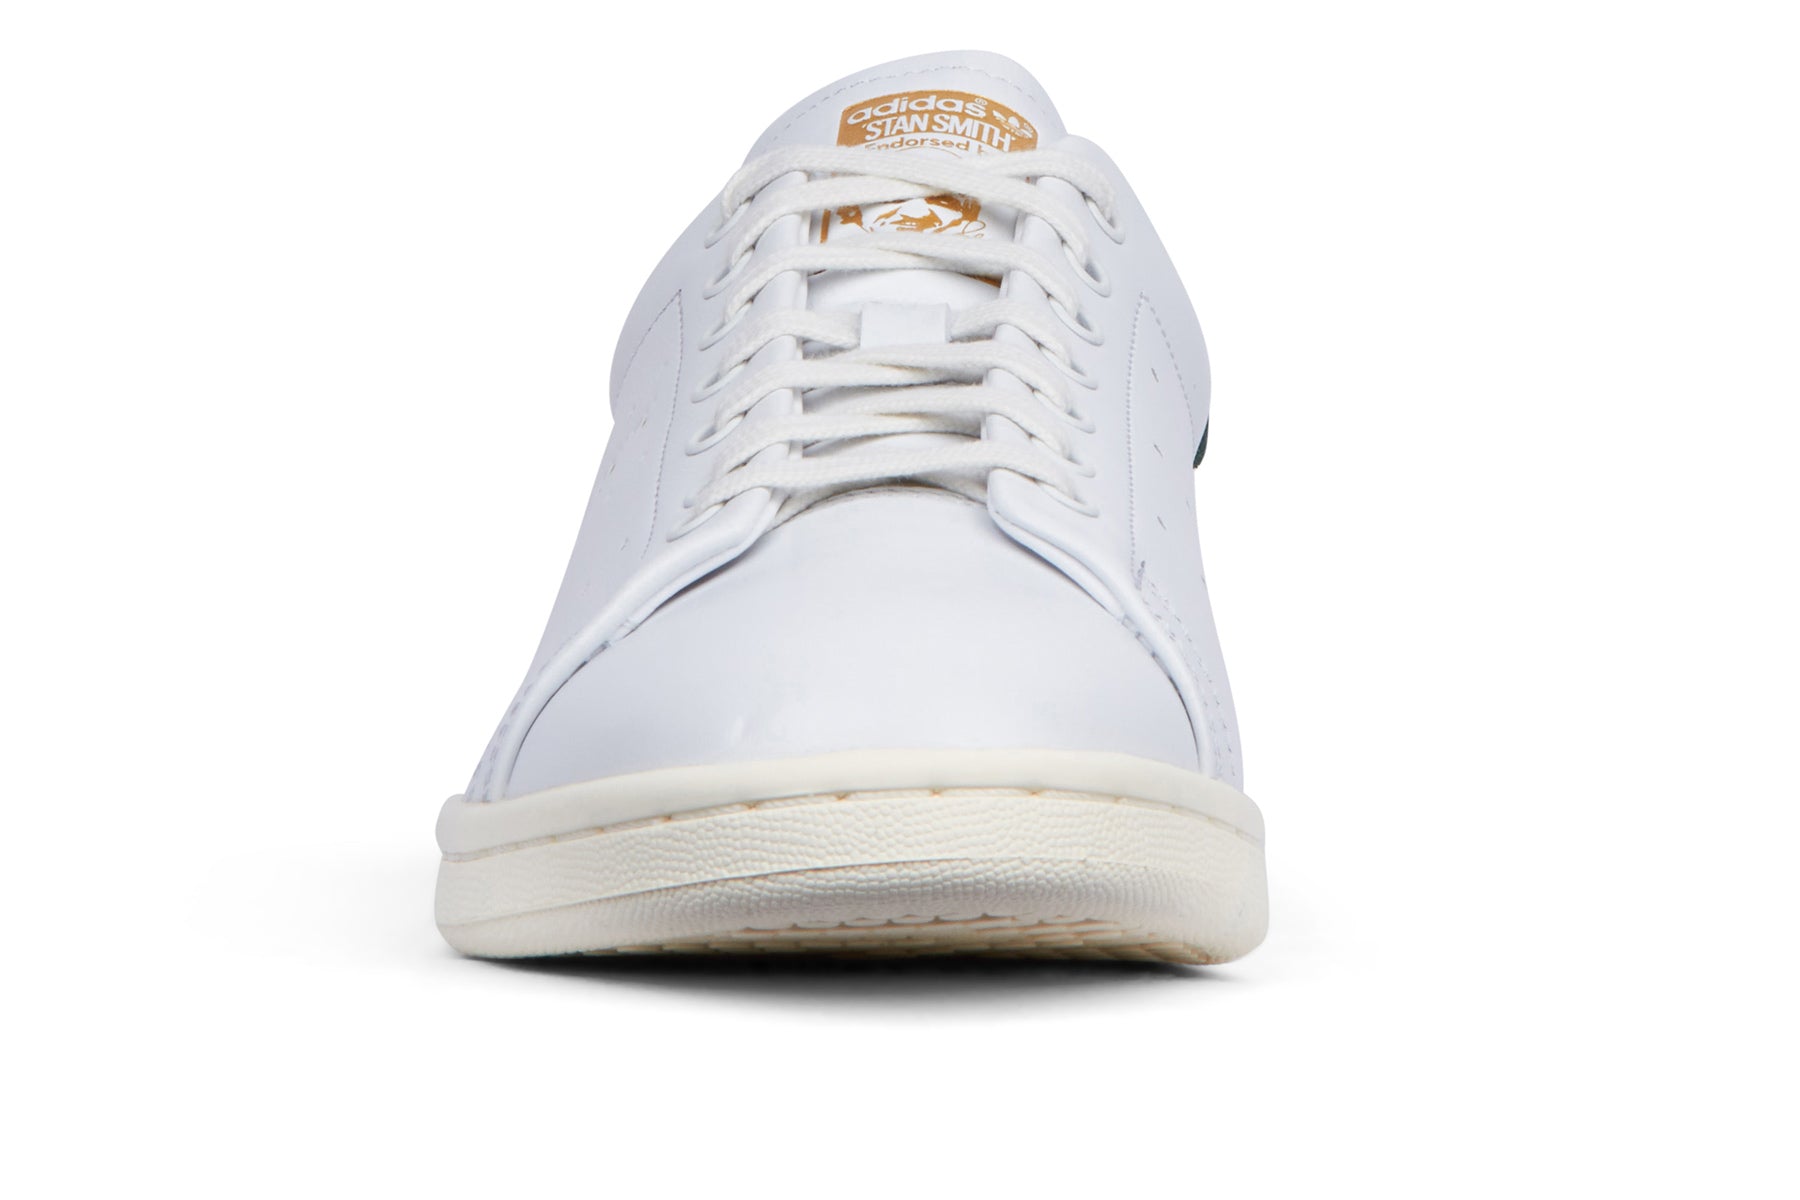 Adidas Stan Smith Lux - Off White/Cream White/Pantone